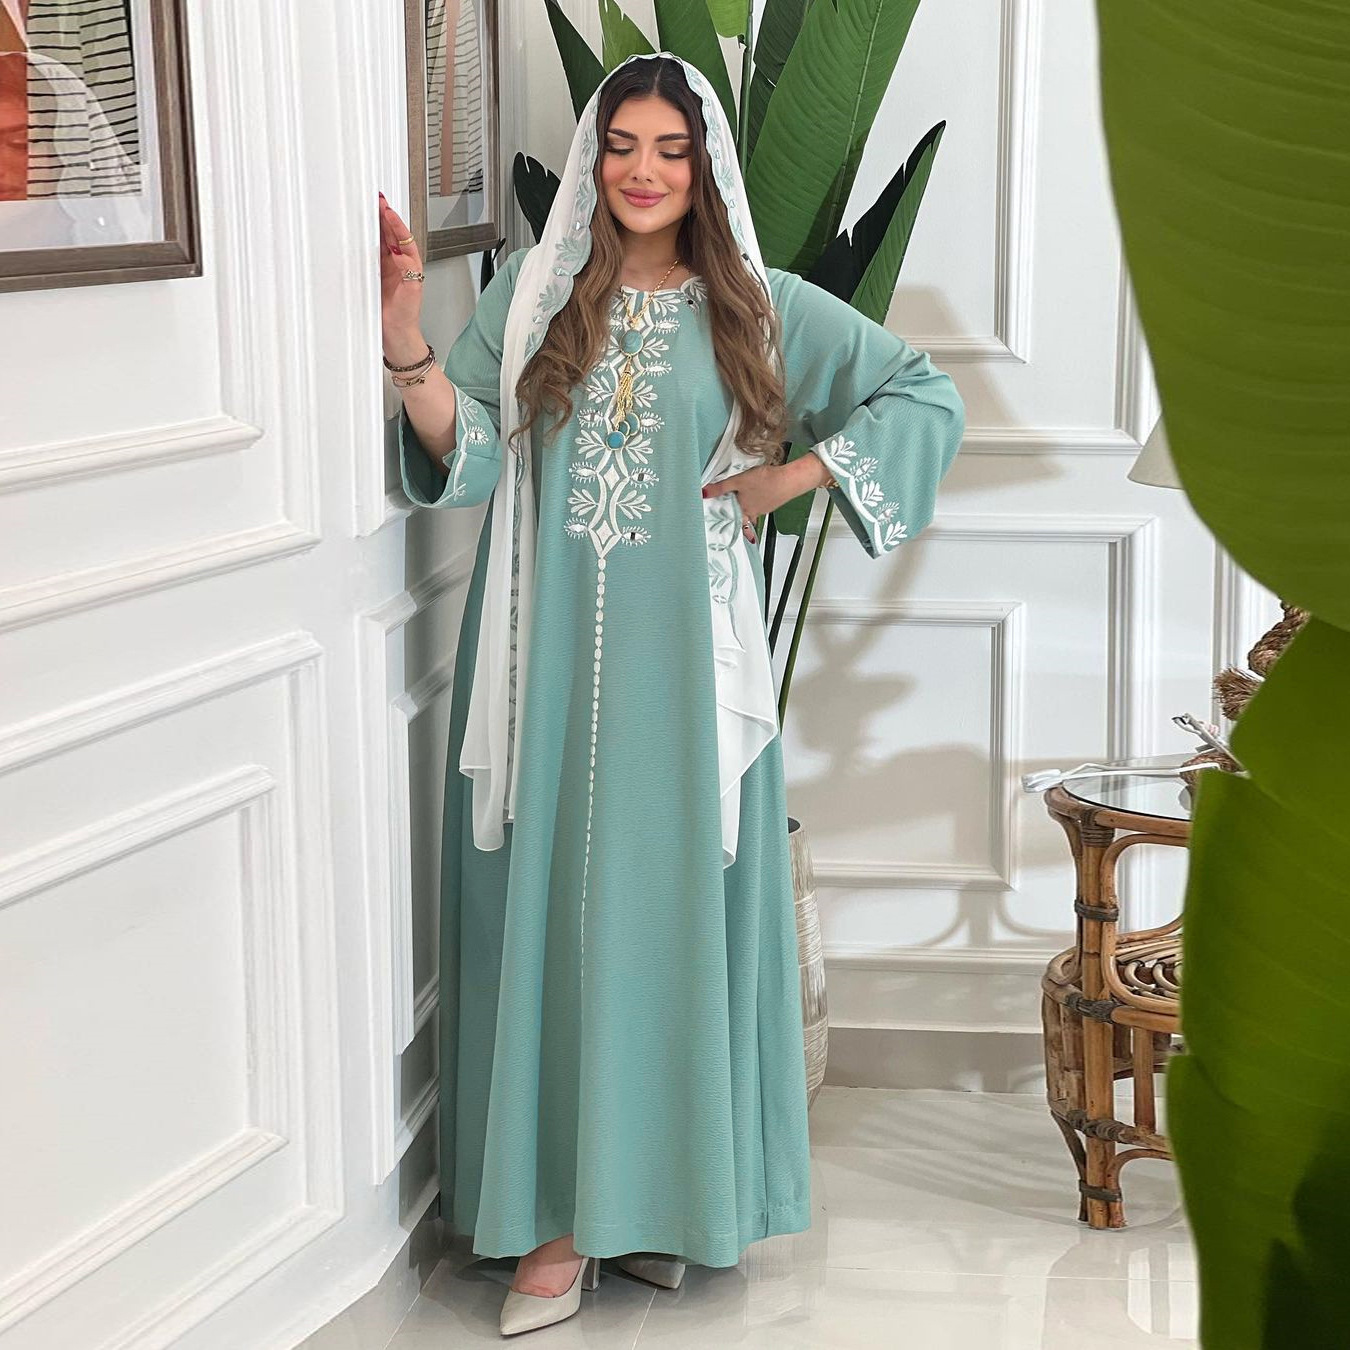 AB250 穆斯林女装 中东阿拉伯时尚精美花卉刺绣绣花长袍jalabiya